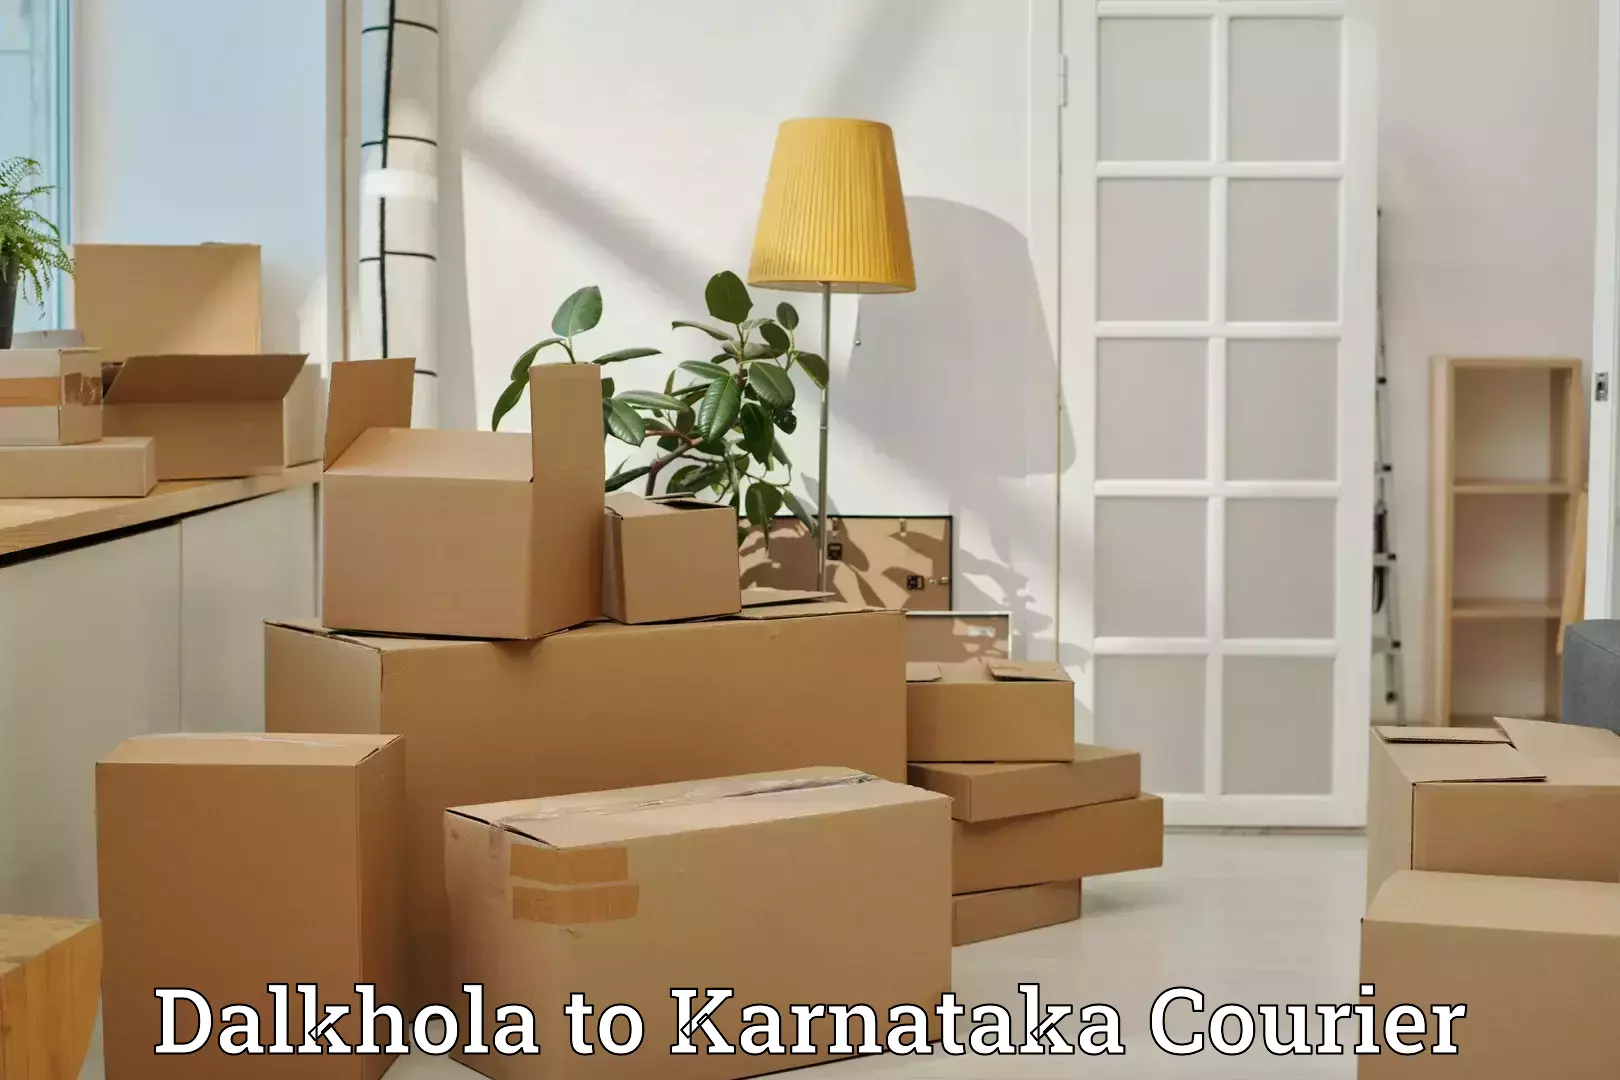 Quick luggage shipment Dalkhola to Bangalore